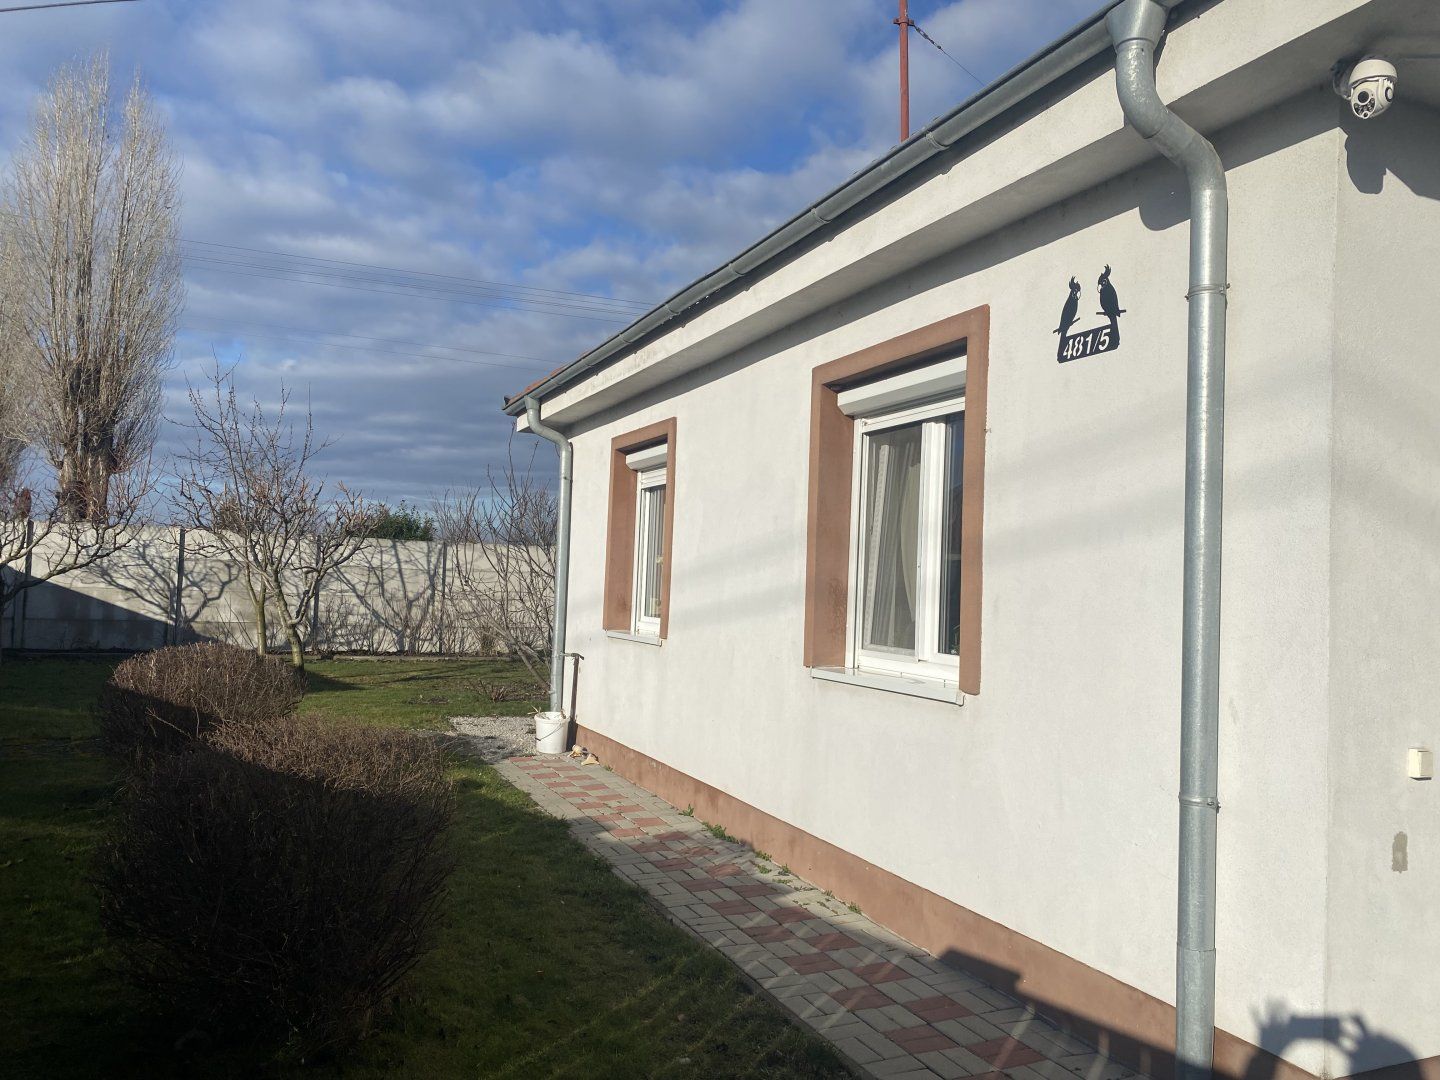 Pekný, priestranný 4-izbový rodinný dom na predaj v obci Topoľníky + garáž, letná kuchyňa, altánok, záhradné jazierko